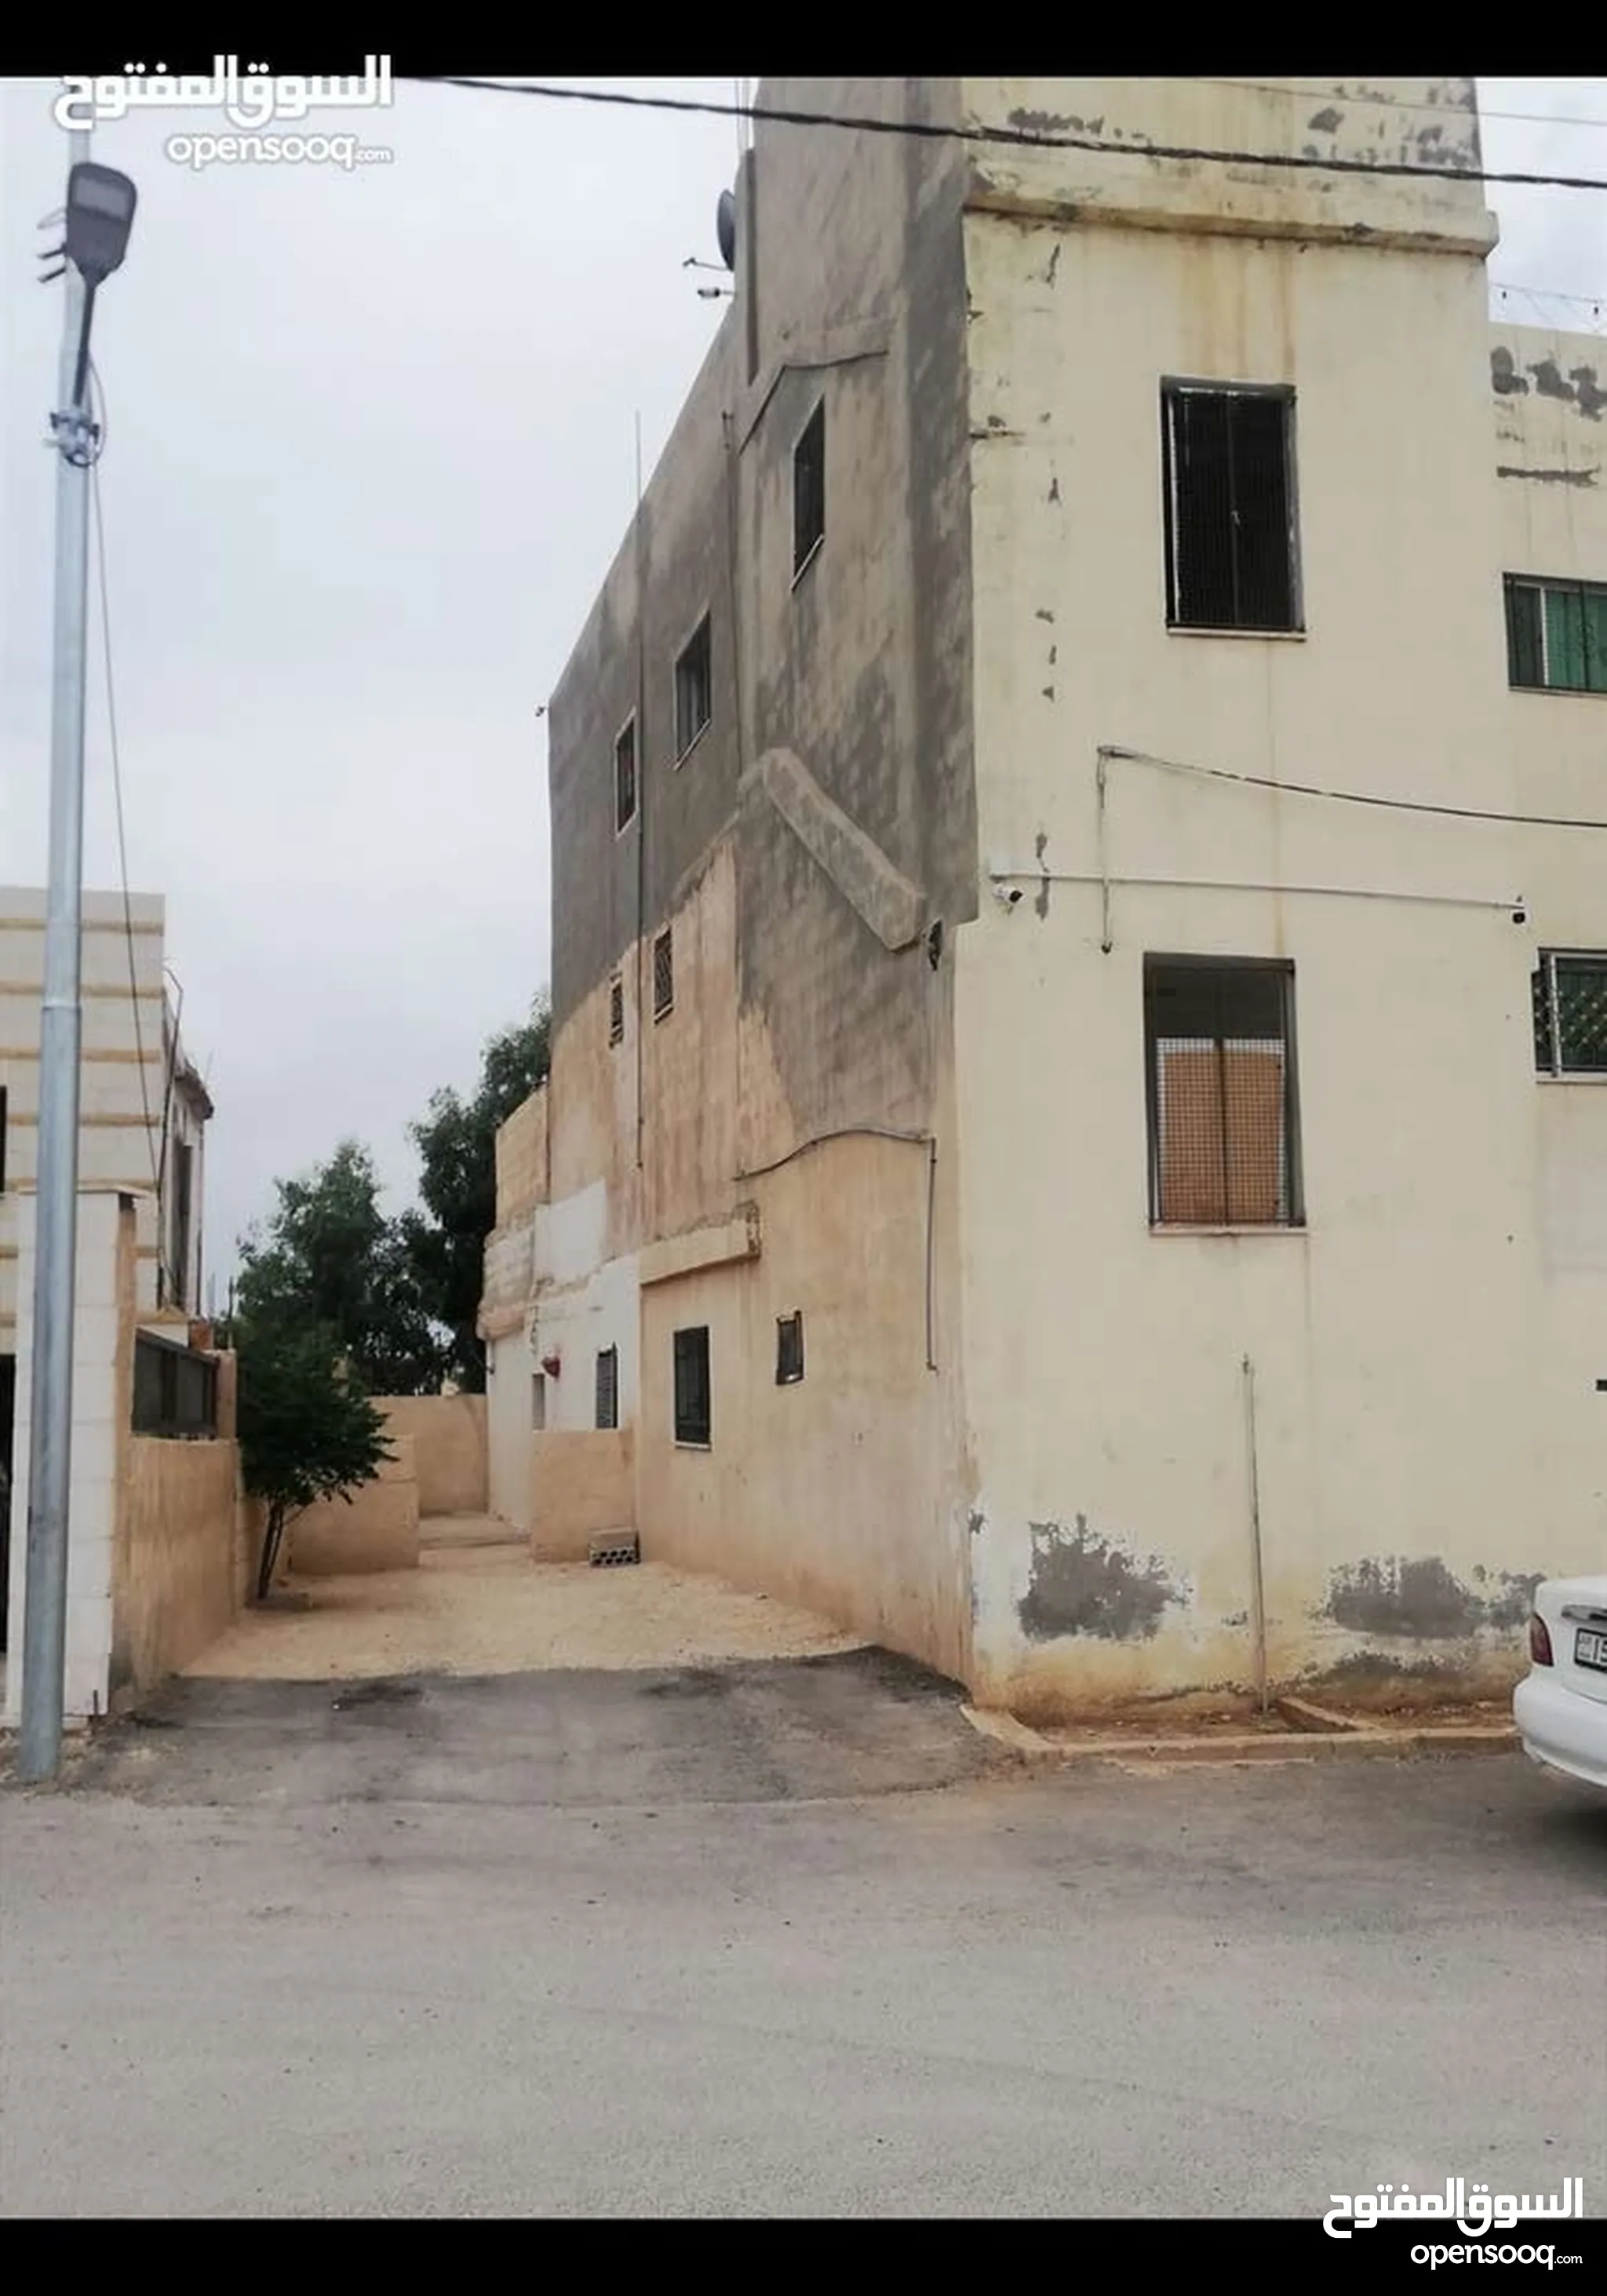 عقارات للبيع : بيوت - منازل للبيع : (صفحة 2) : عمان مرج الحمام | السوق  المفتوح